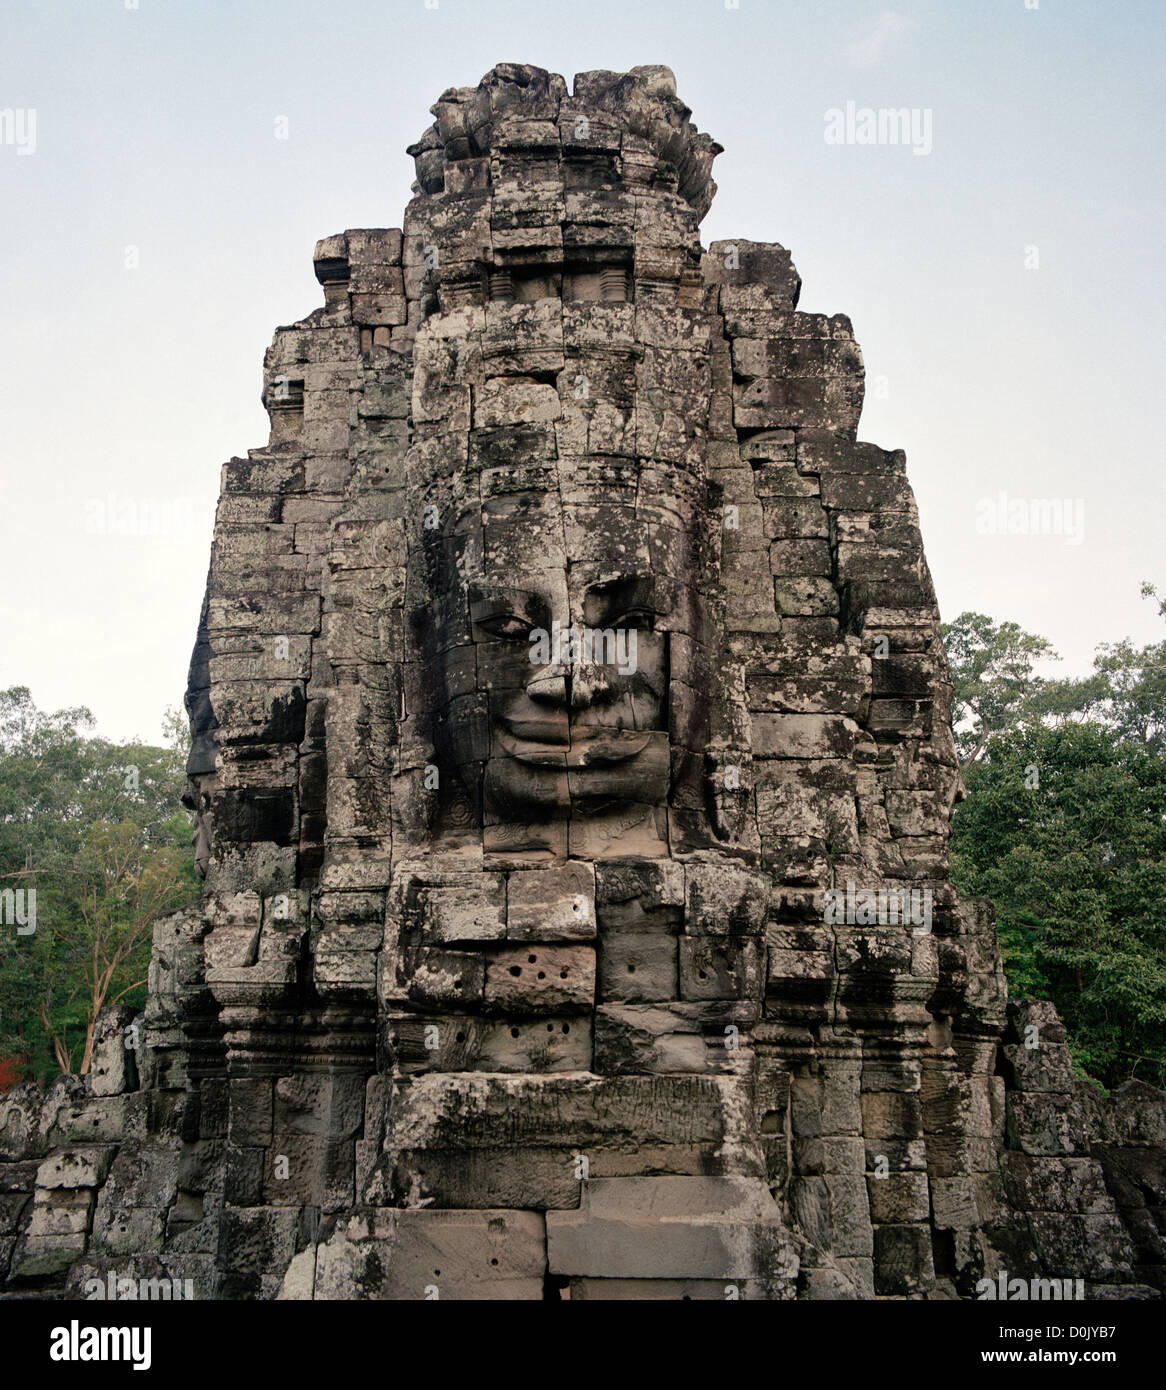 Nella giungla è l'architettura Khmer del Bayon di Angkor Thom presso i templi di Angkor in Cambogia nel sud-est asiatico. Storia della Cambogia Travel Foto Stock